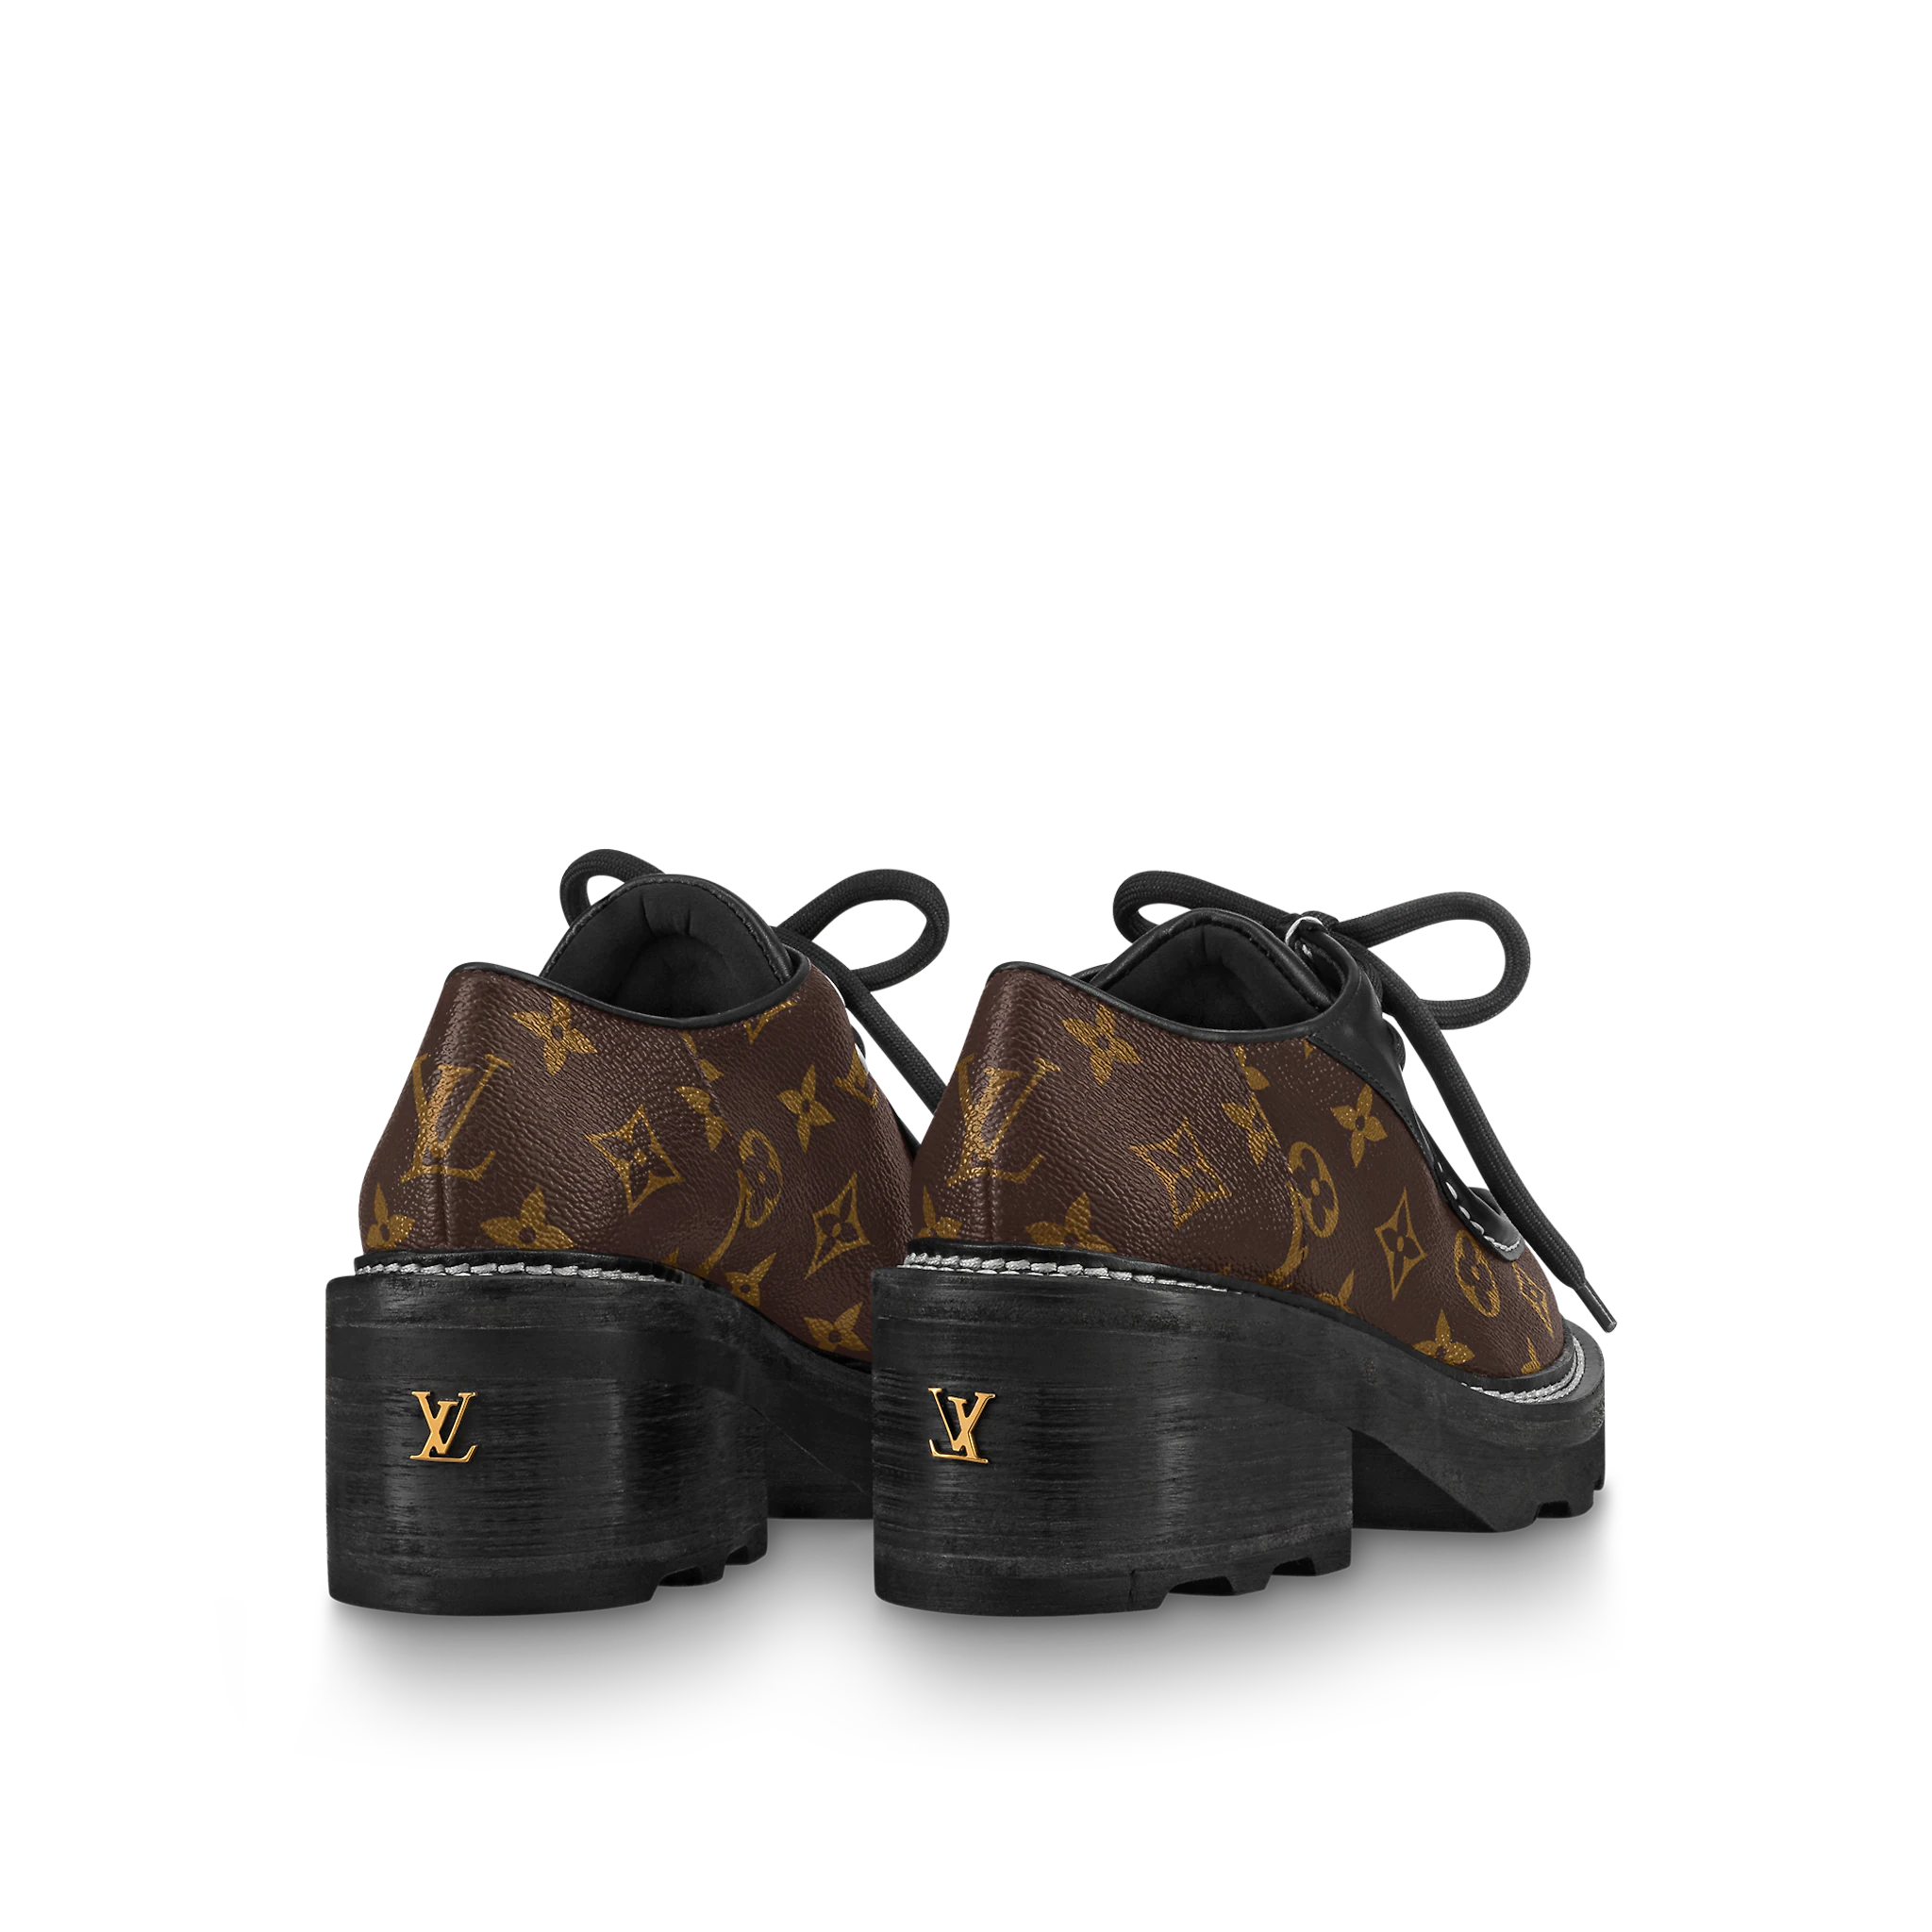 Gmar Store - Louis Vuitton Beaubourg Platform Derby Shoes - Gmar